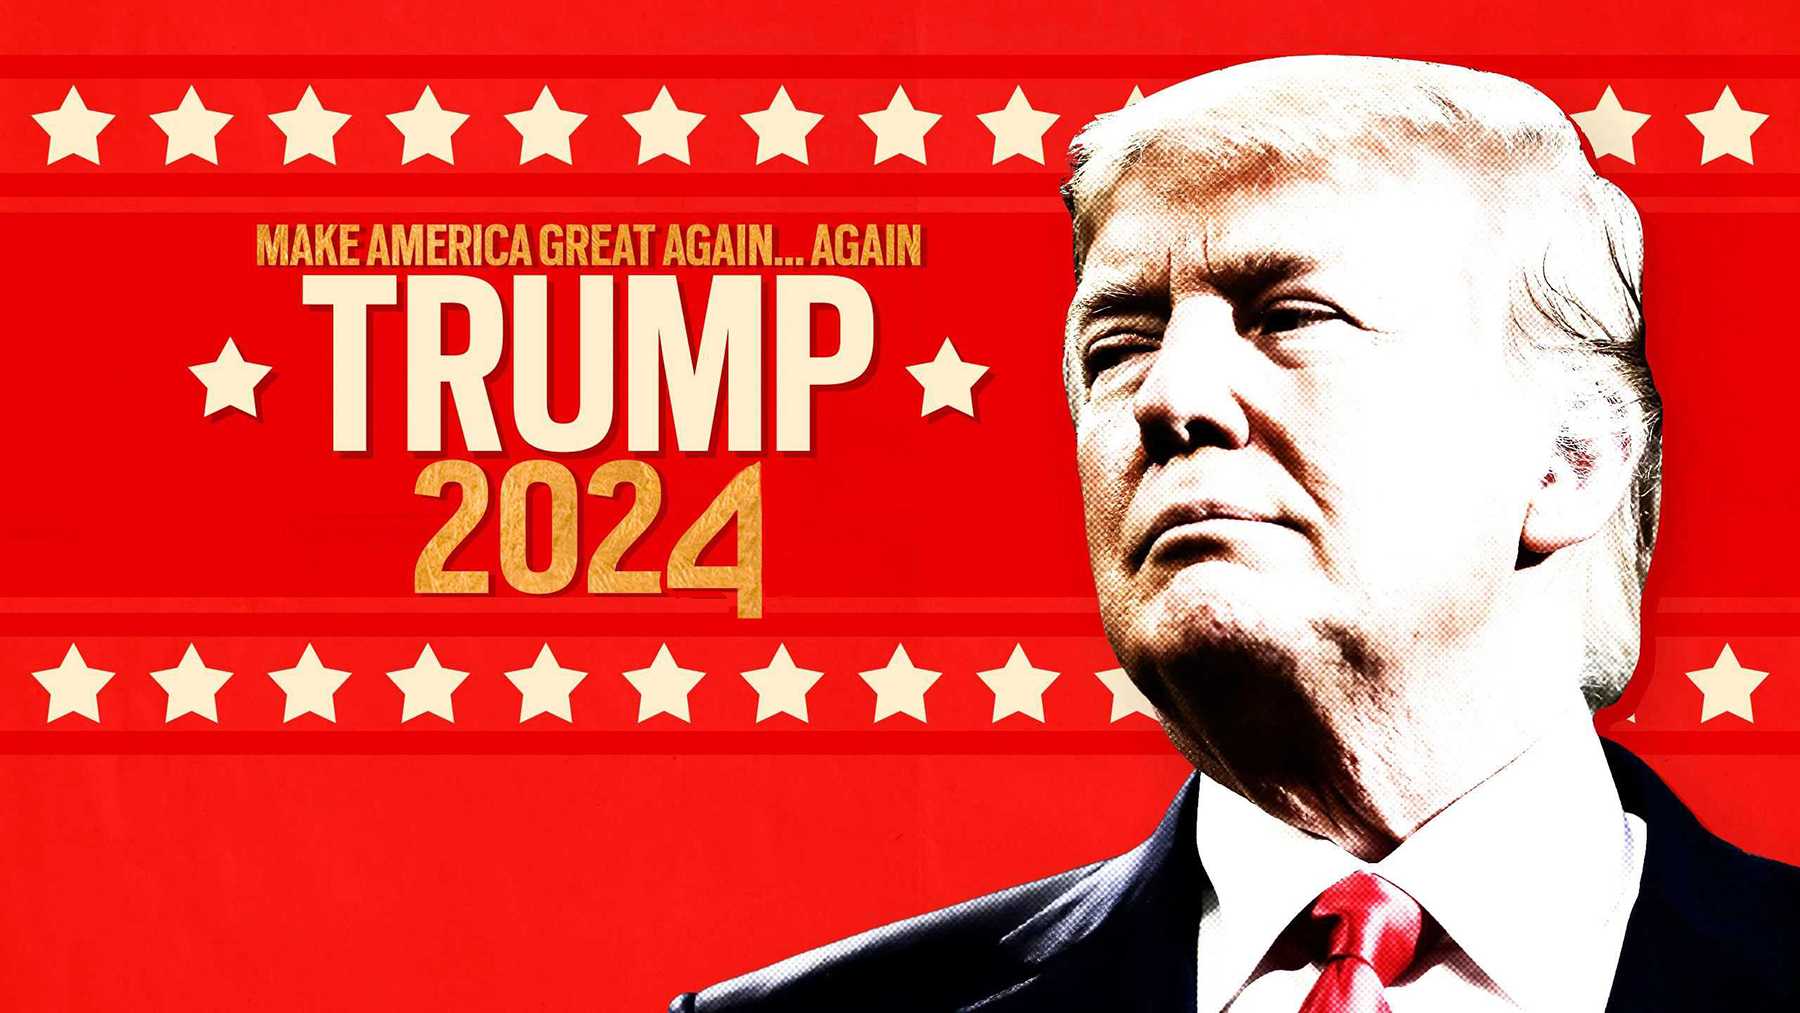 22 Trump 2020 iPhone Wallpapers  WallpaperSafari